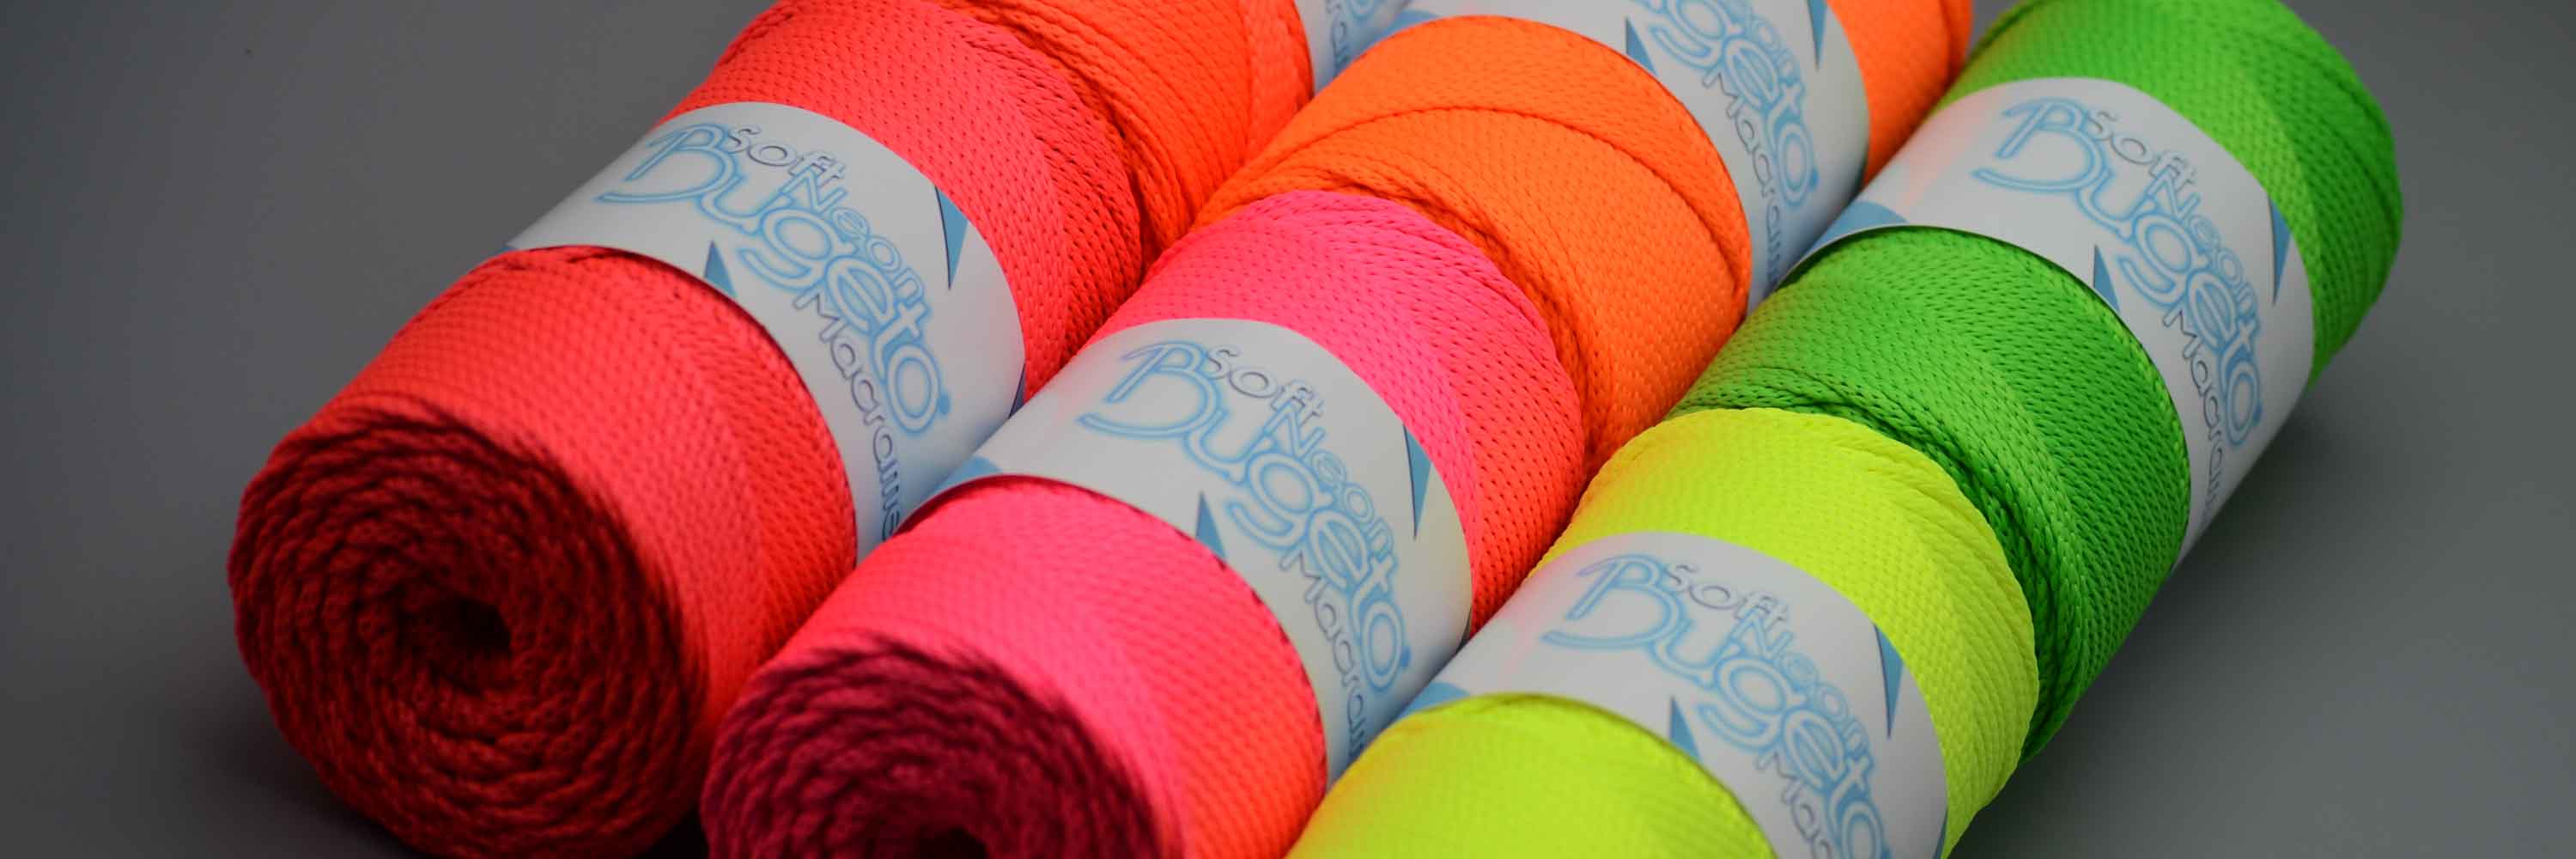 polyster yarns soft neon macrame yarn neon yarn neon colored yarns bugeto yarn